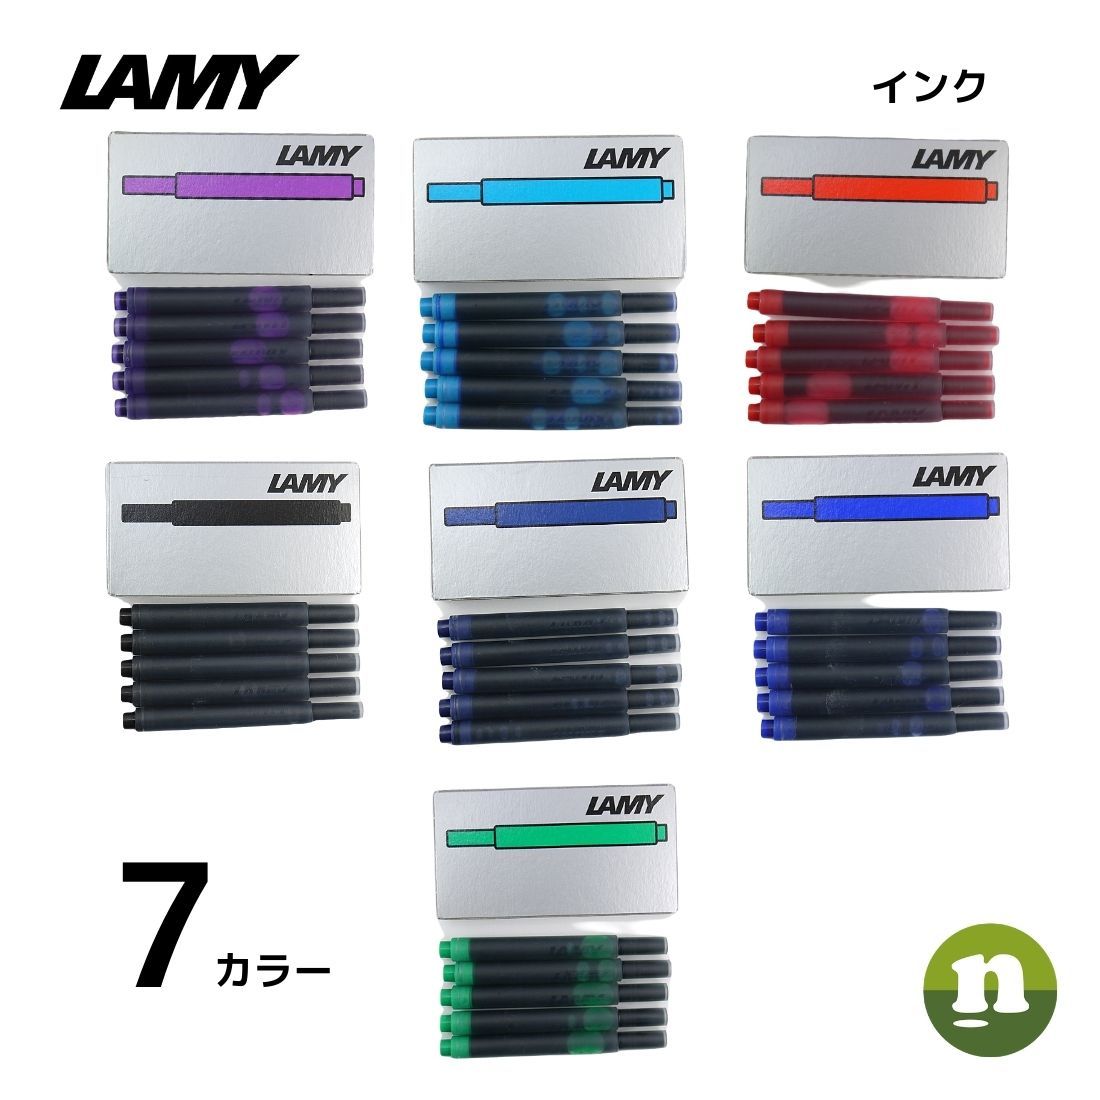 LAMY ラミー インク カートリッジ 5本入 全7色 ブラック ブルー ブルーブラック レッド グリーン ターコイズ バイオレット :LT10:腕時計ショップ  newest - 通販 - Yahoo!ショッピング